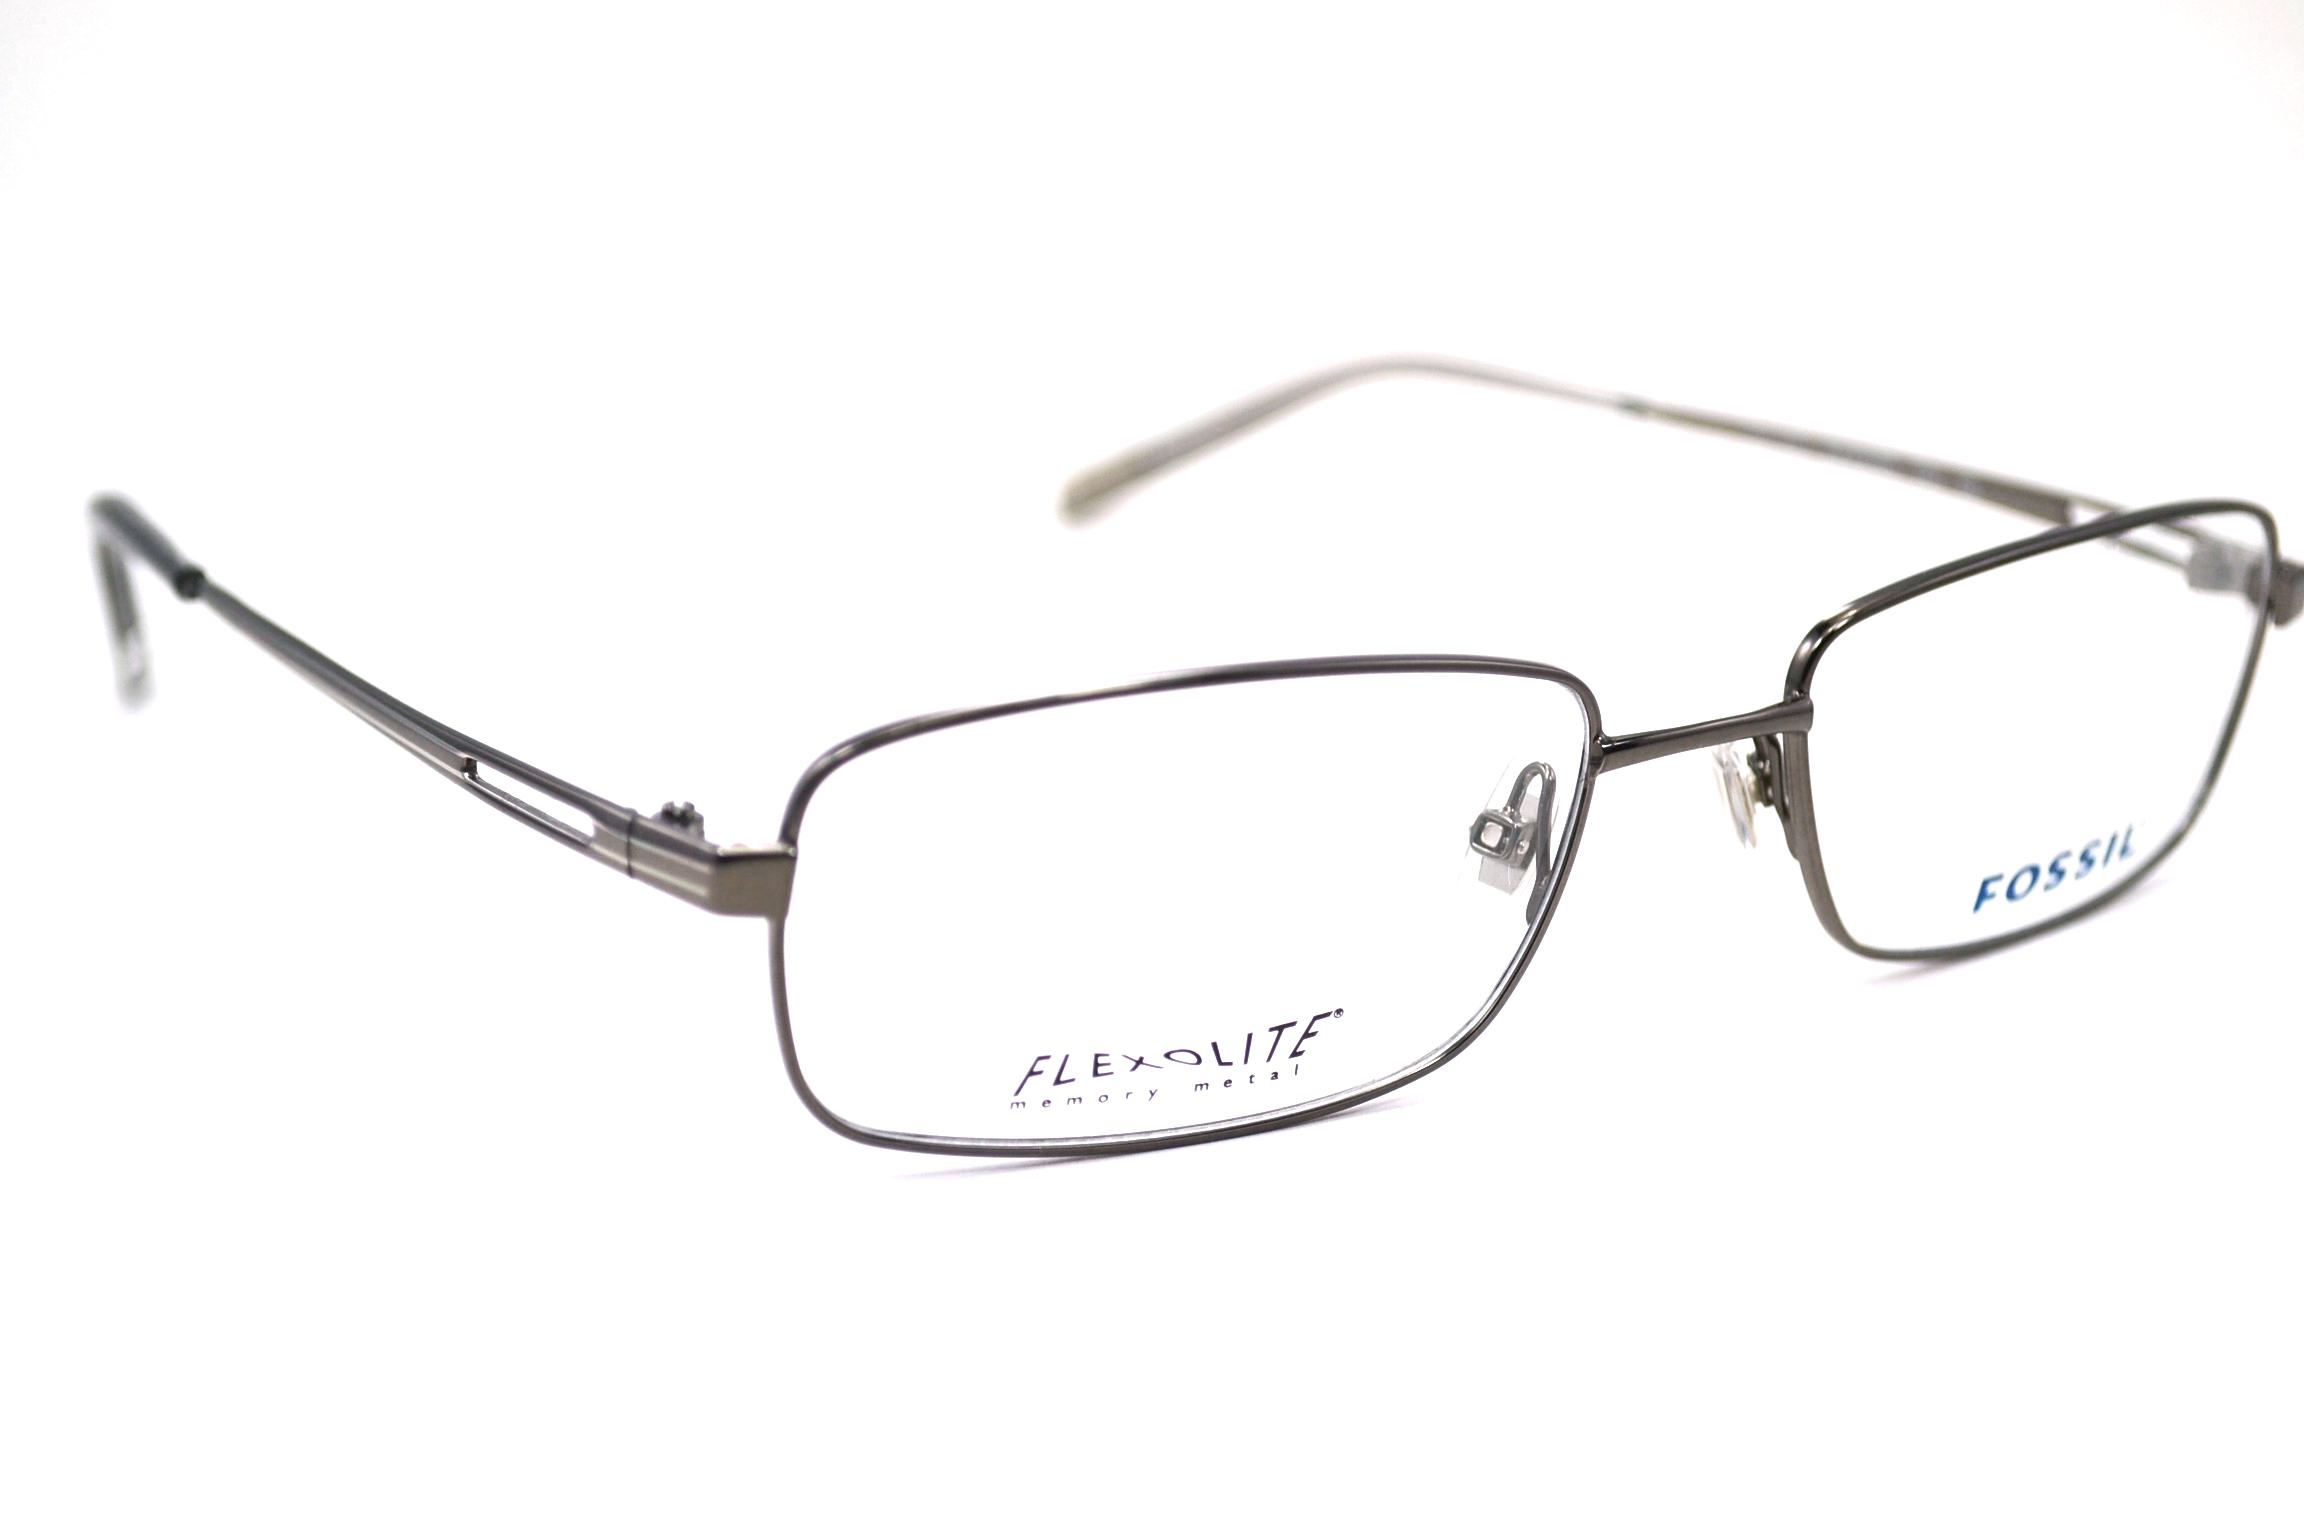 Designer Frames Outlet. Fossil Eyeglasses ALEXANDER